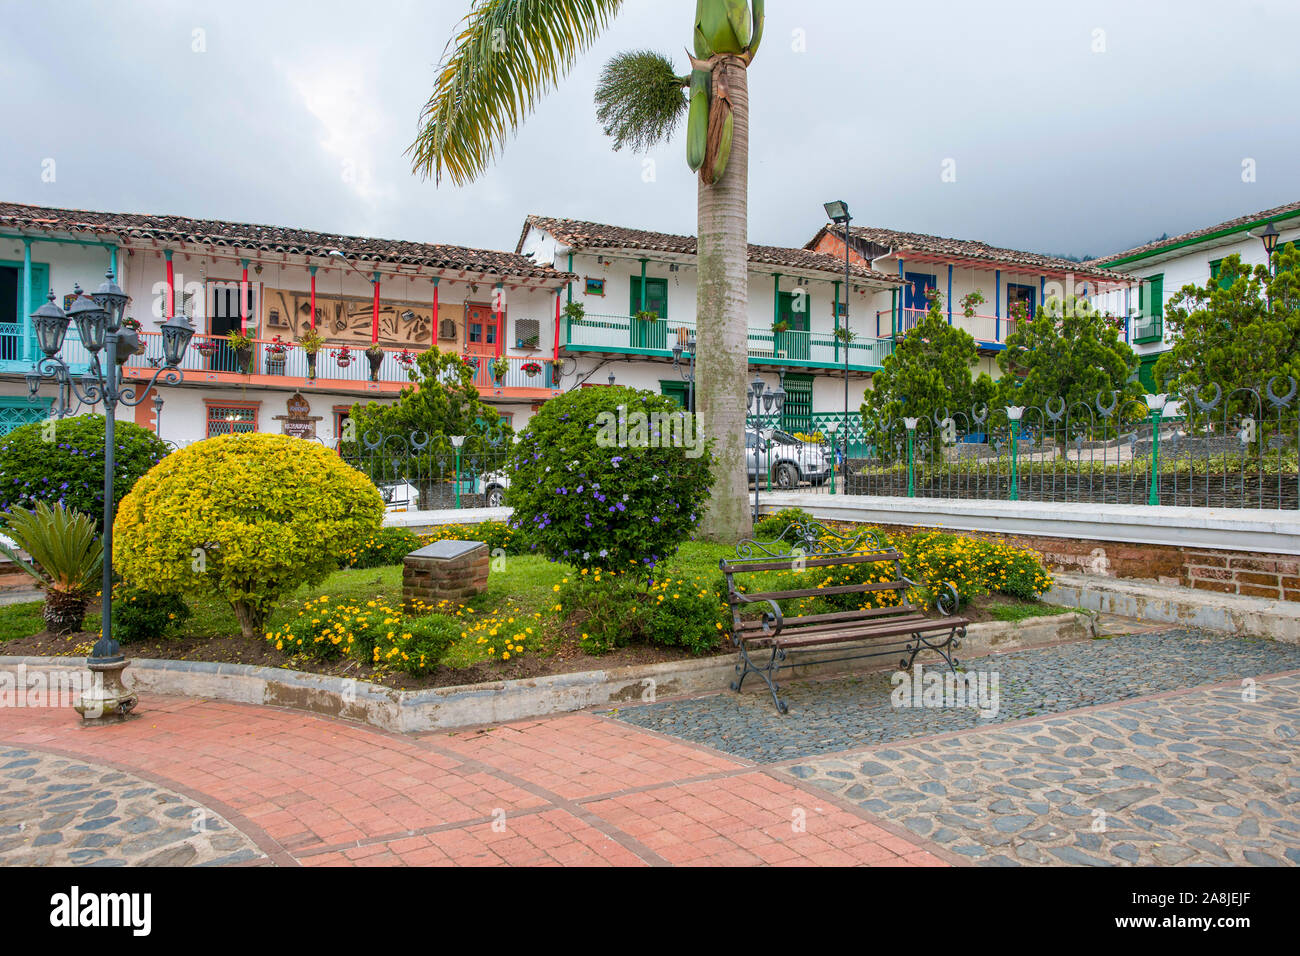 The village of Concepción, Antioquia, Colombia. Stock Photo